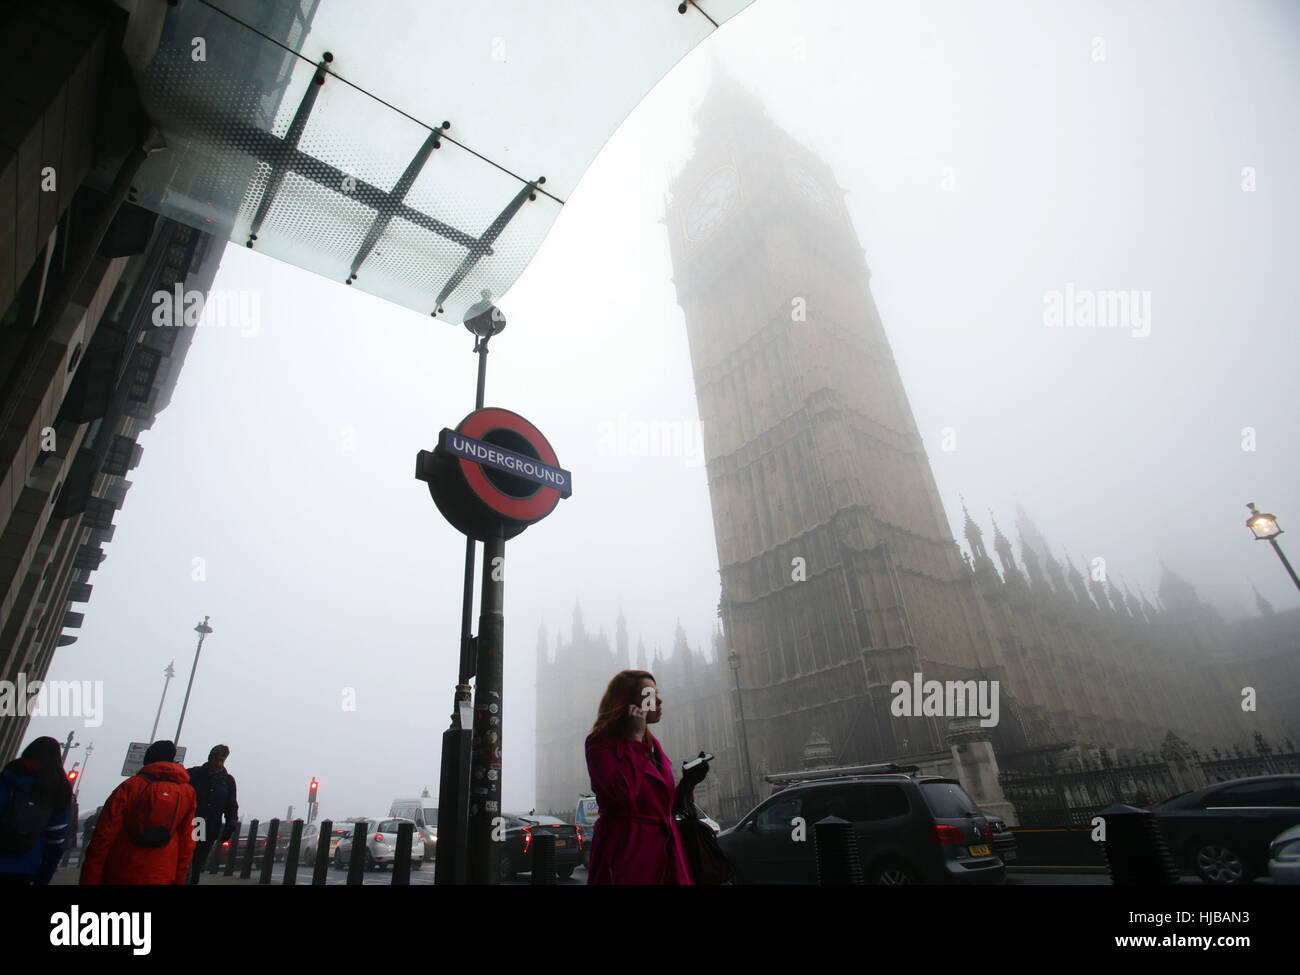 Elizabeth Tower in Westminster, London, ist eingehüllt in Nebel, möglichst dichten Nebel verursacht Reisen Unterbrechungen über Südengland, mit Tausenden von Fluggästen gegenüber Annullierungen und Verspätungen. Stockfoto